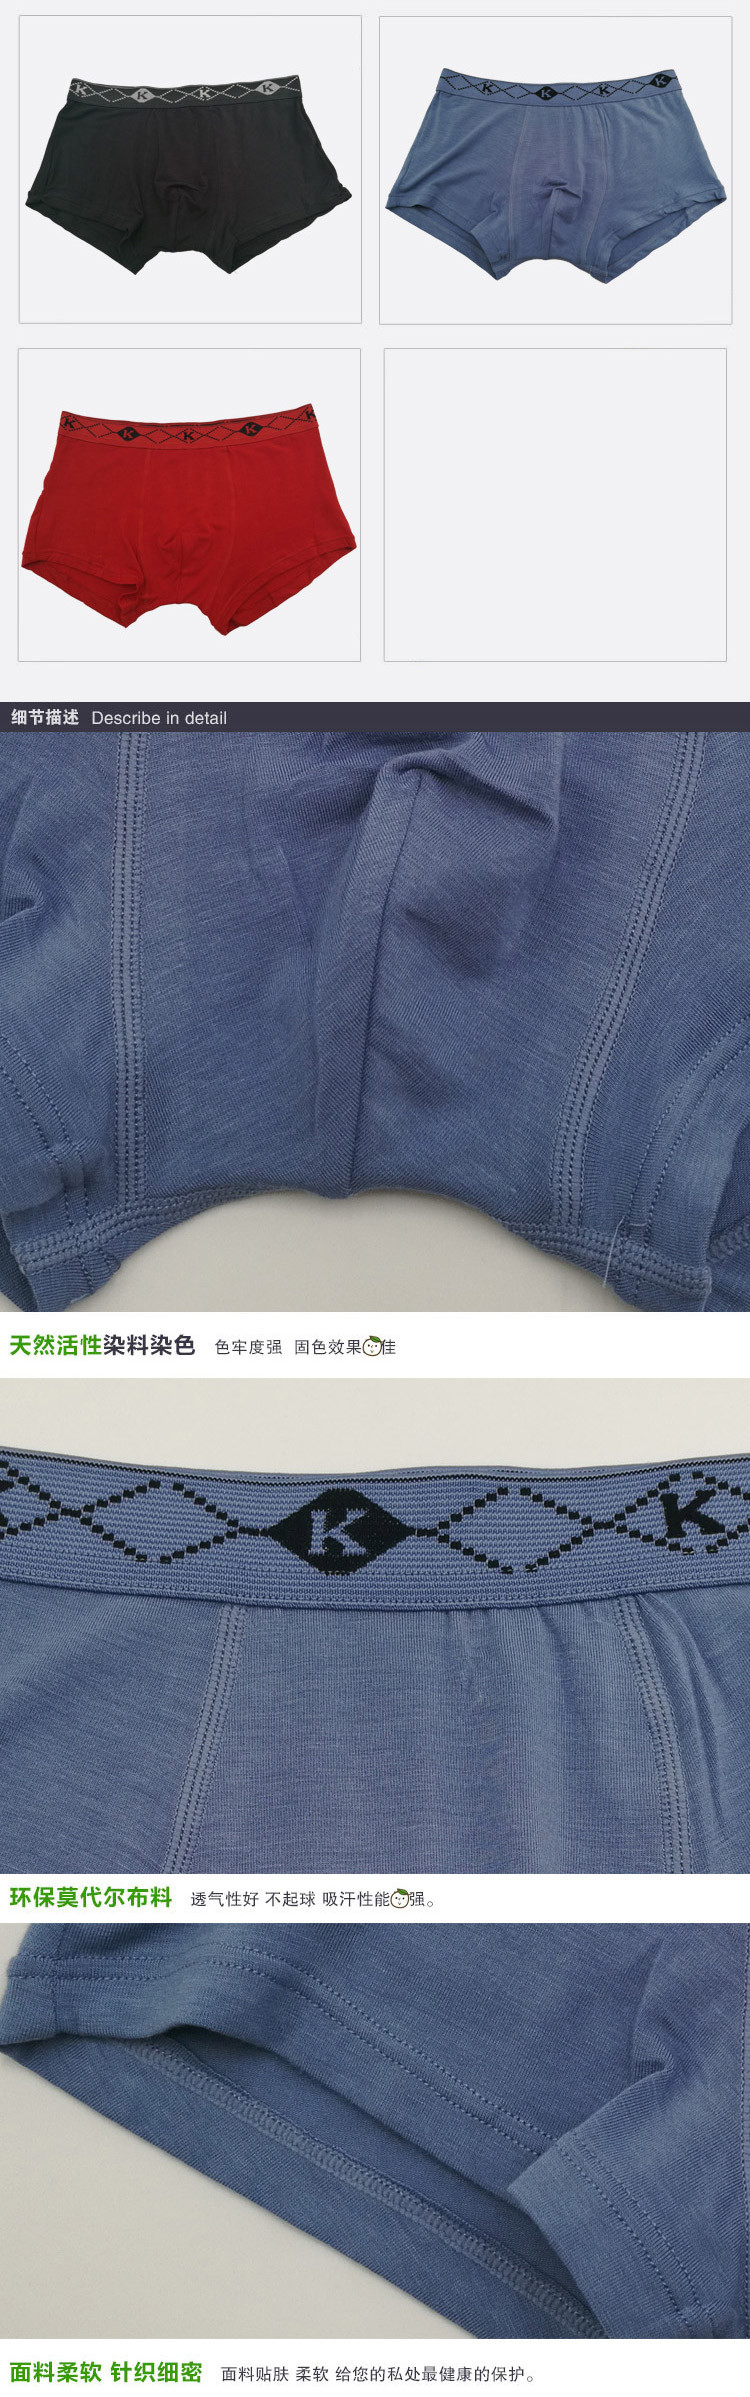 好安怡 莫代尔纯色男土平角内裤 舒适透气 短裤/裤头颜色随机XS052